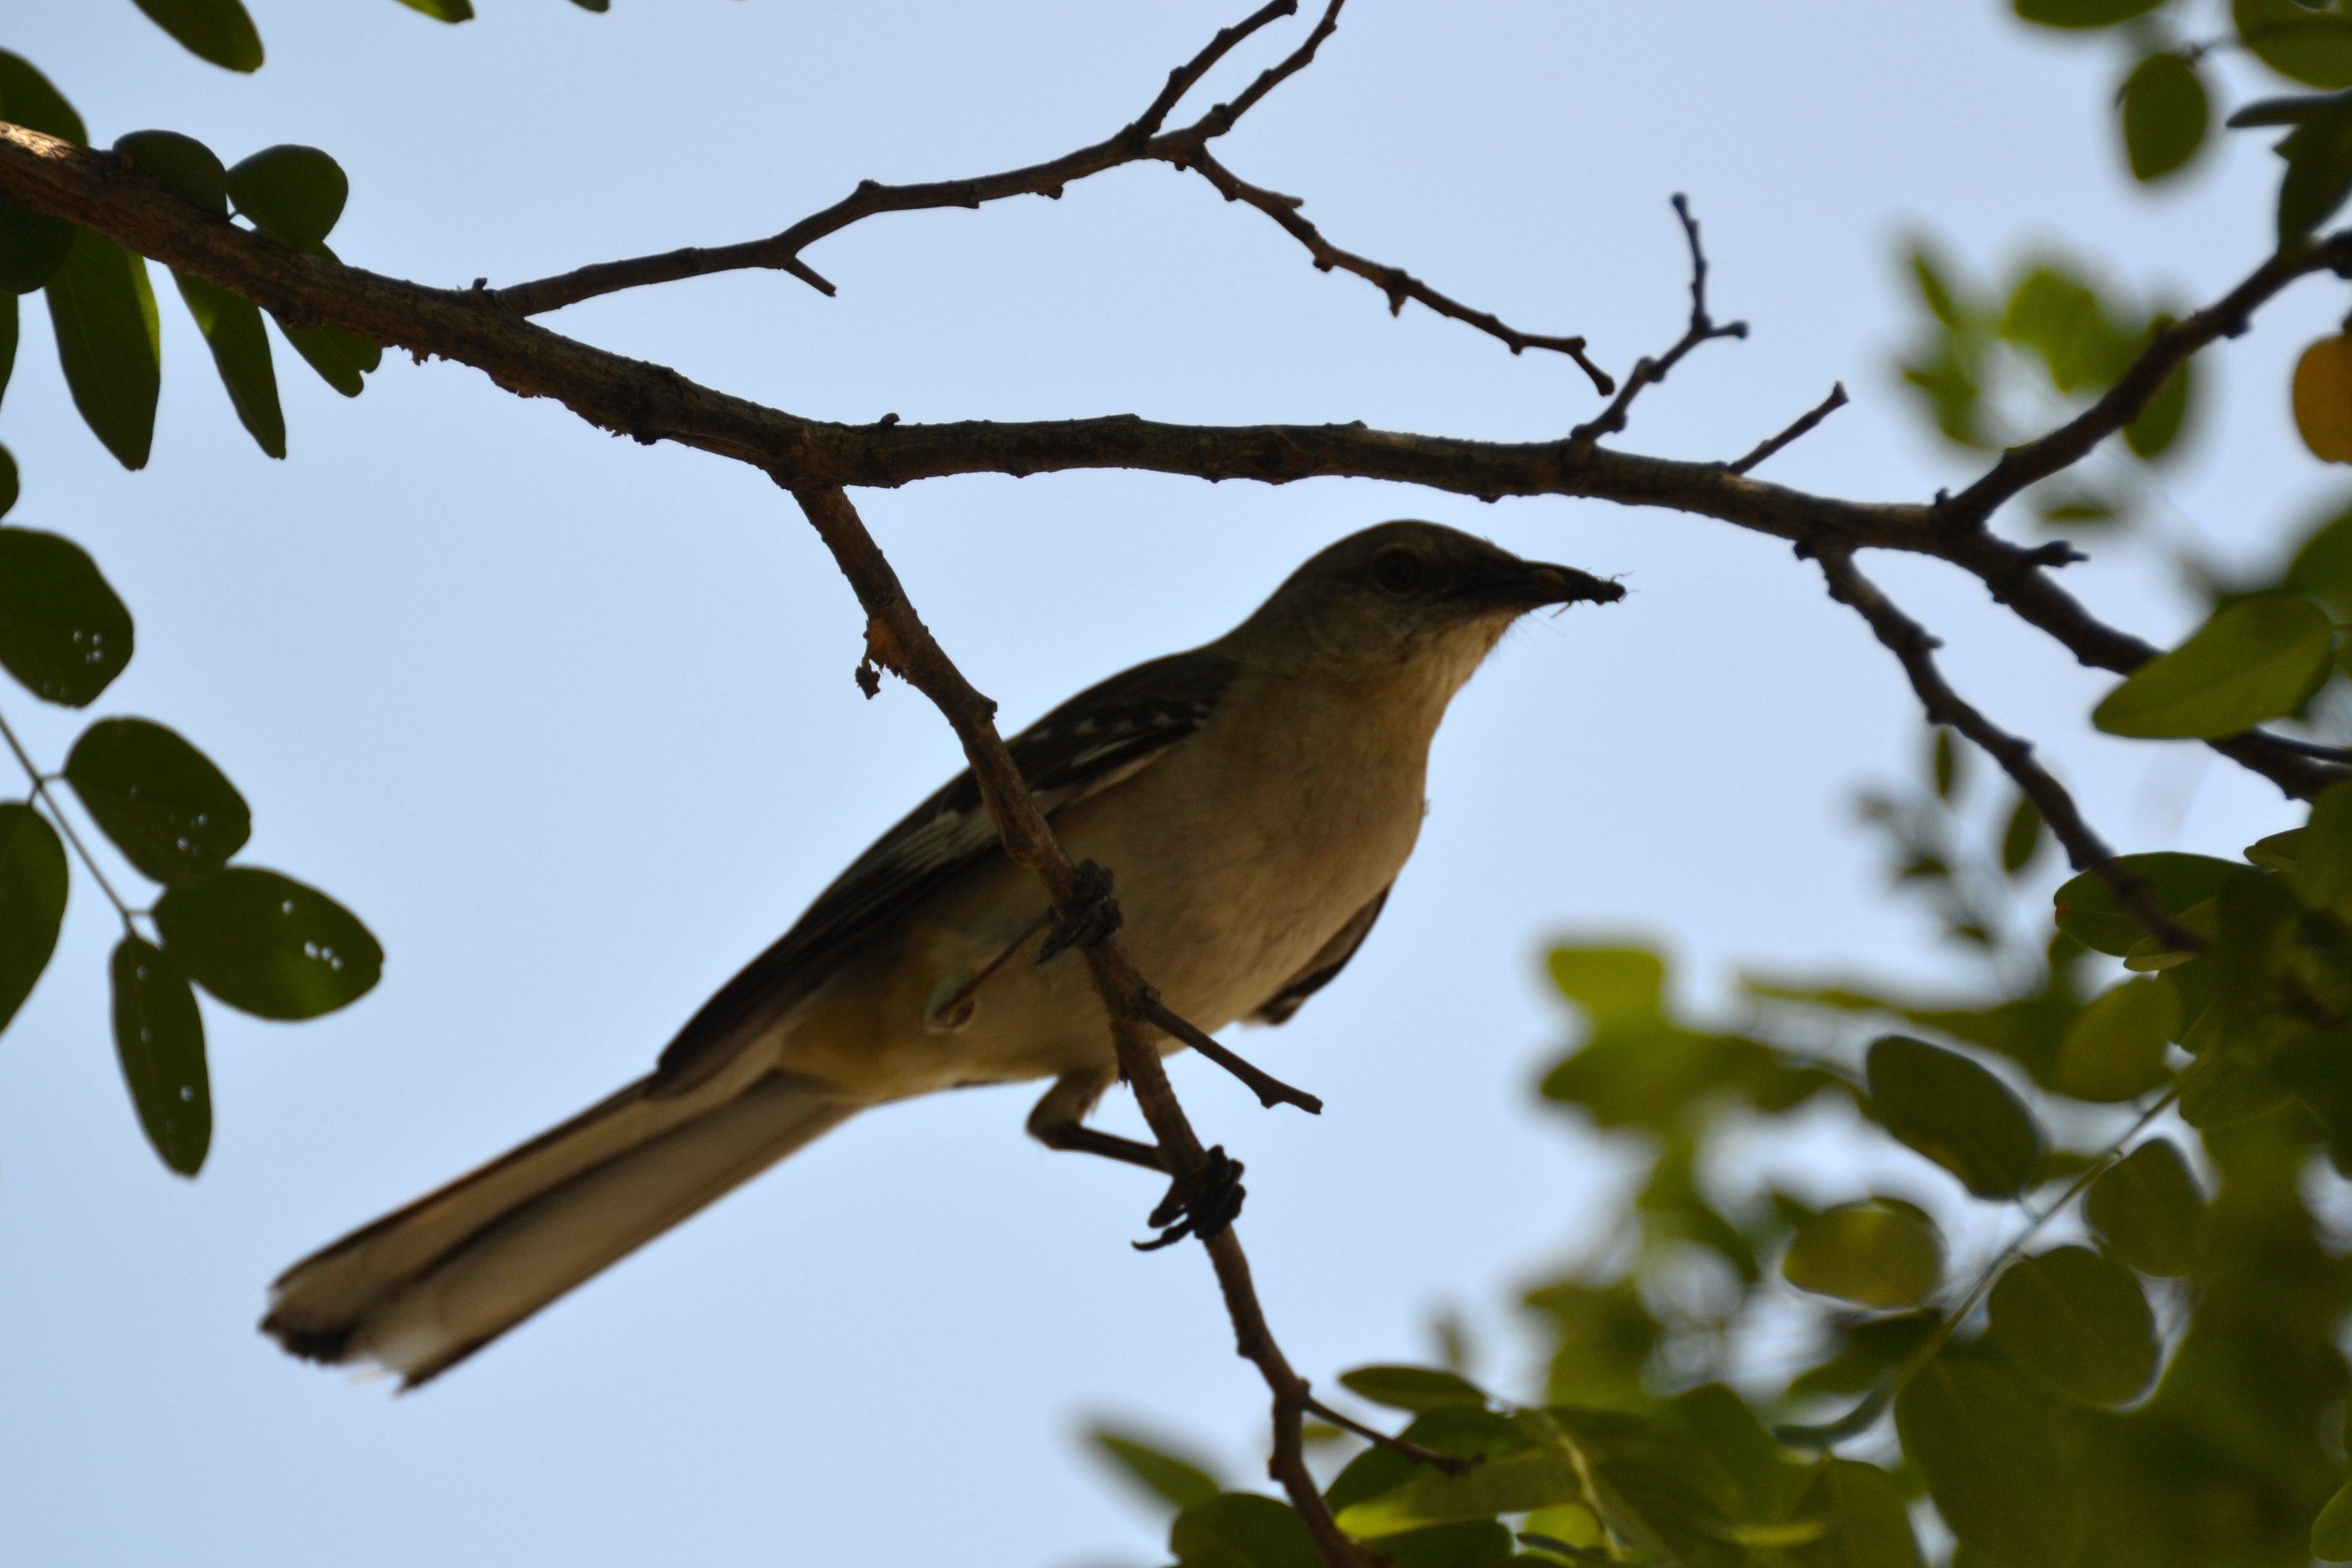 File:Bird In A Tree (5773345360).jpg - Wikimedia Commons